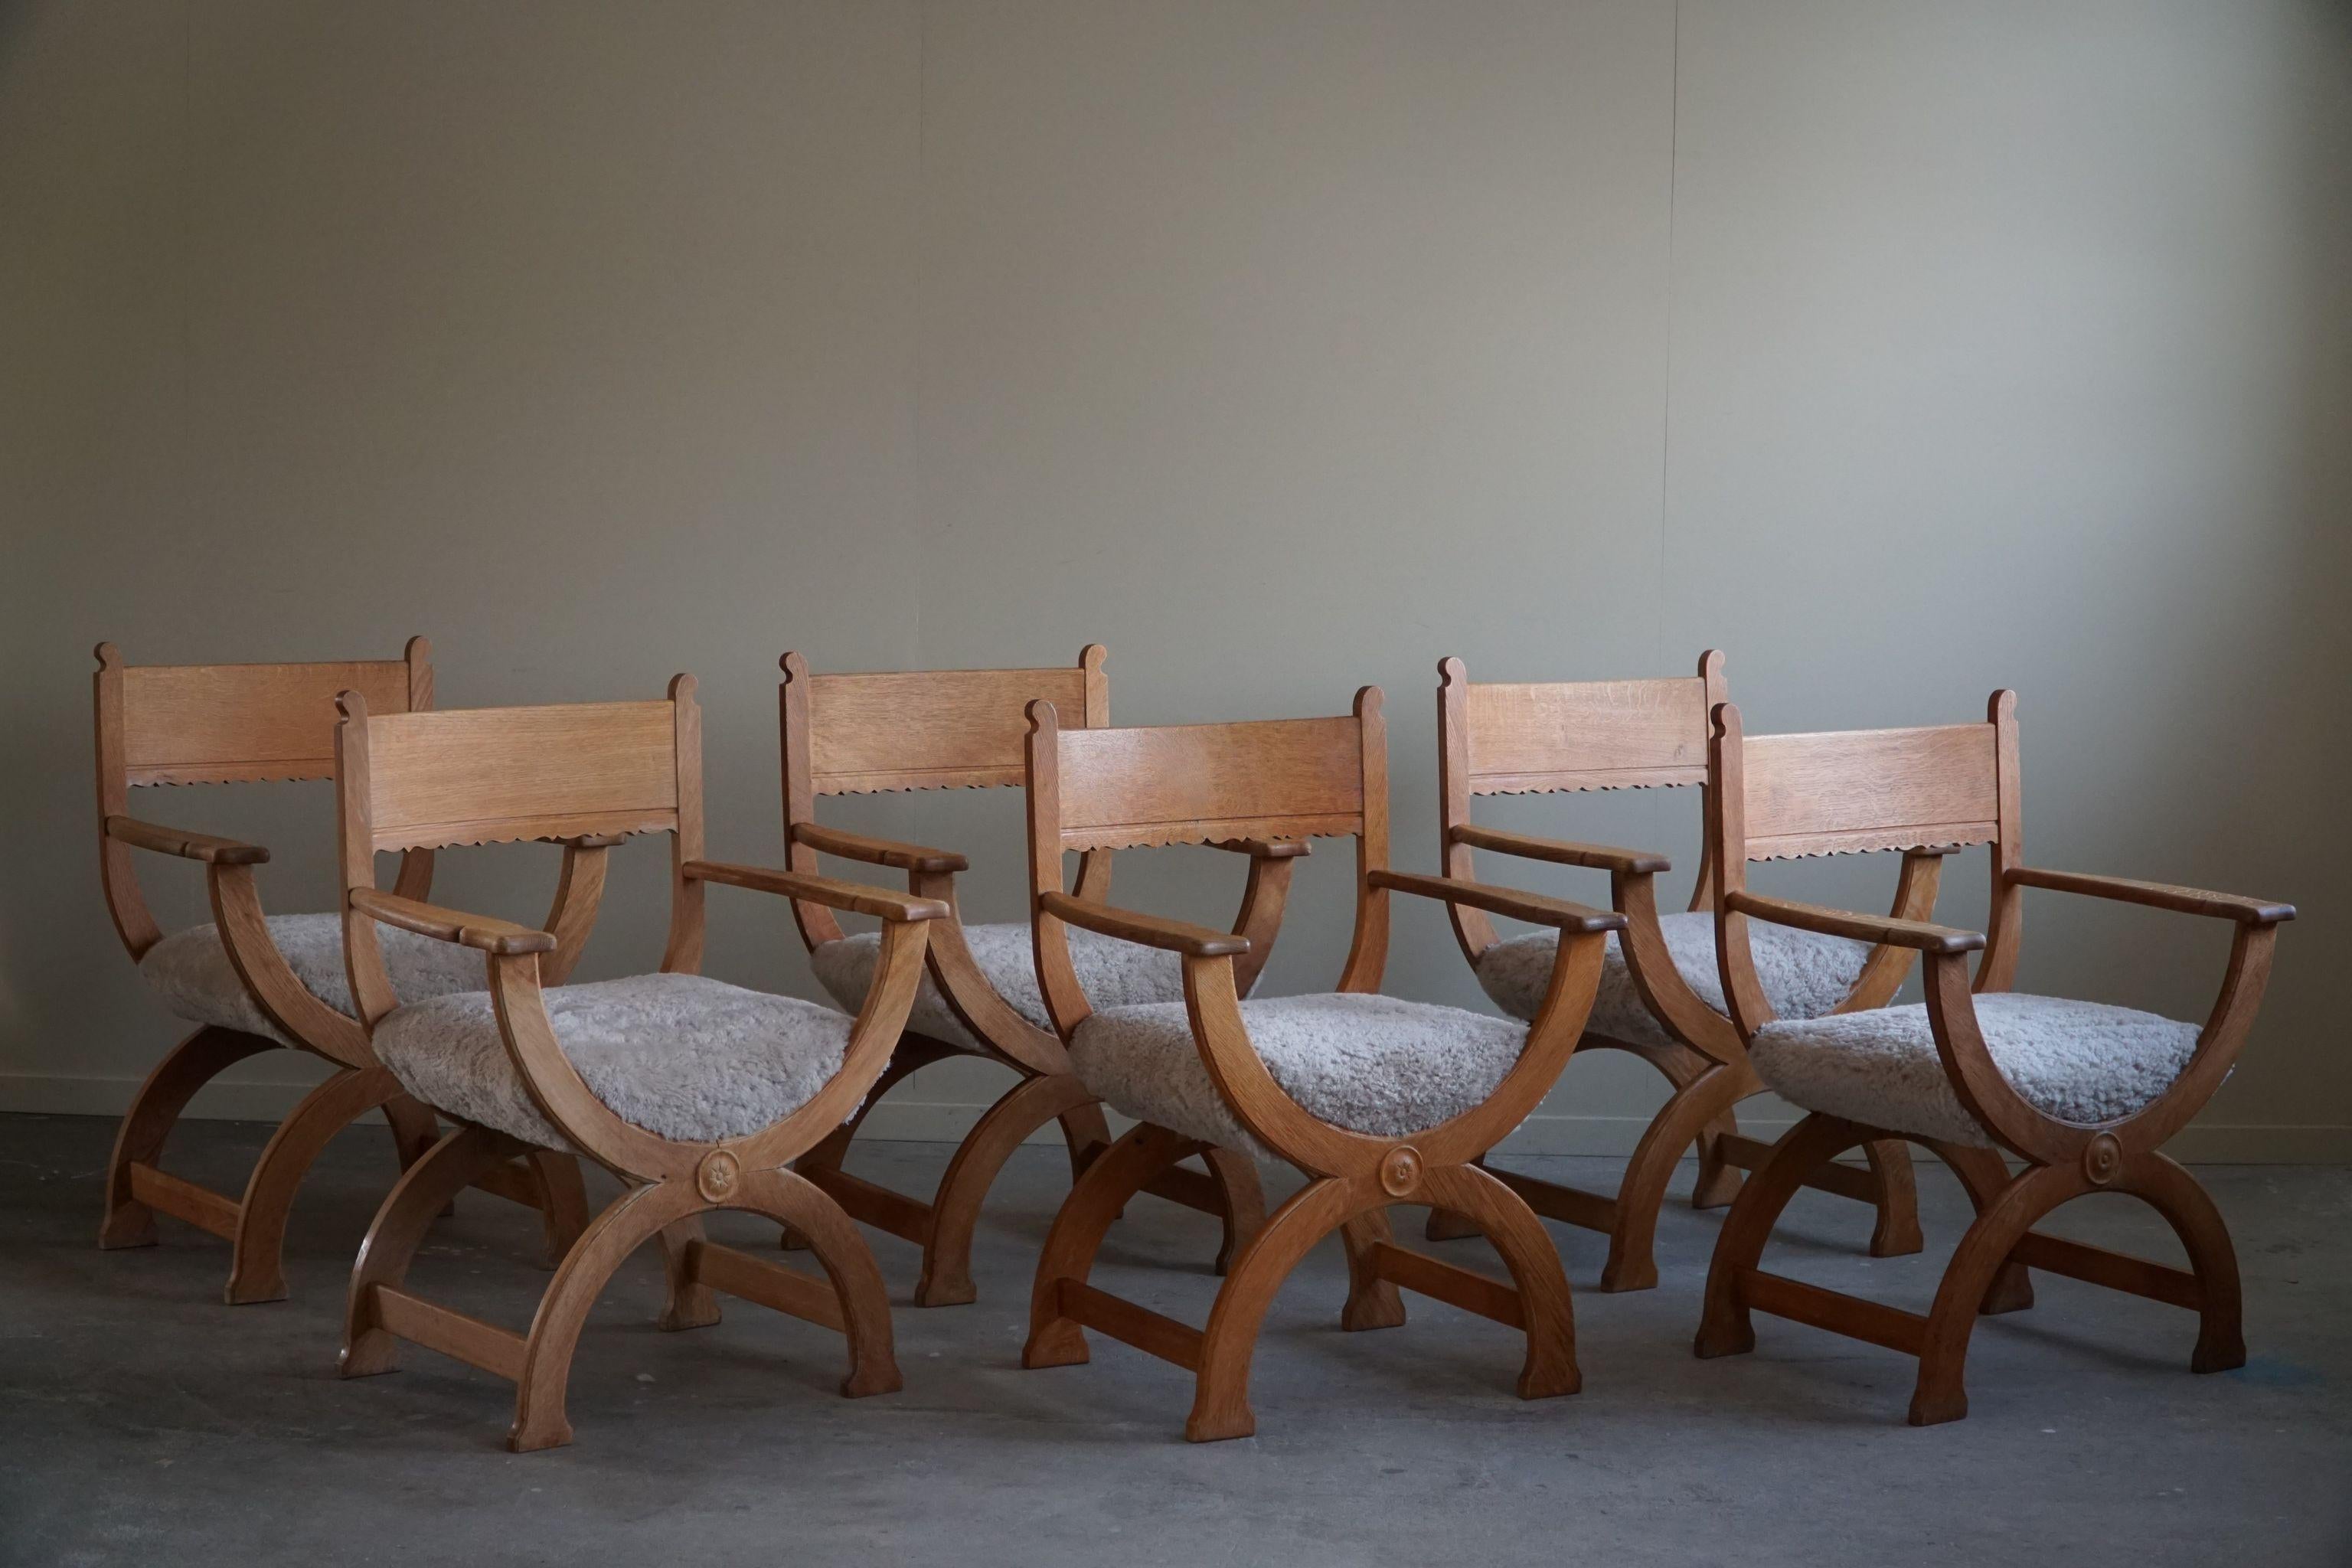 Un bel et rare ensemble de 6 fauteuils en chêne, dont les sièges ont été retapissés en laine d'agneau de grande qualité. Conçu par Henning Kjaernulf pour EG Kvalitetsmøbel, Danemark, dans les années 1960. 

L'impression générale de ces chaises du